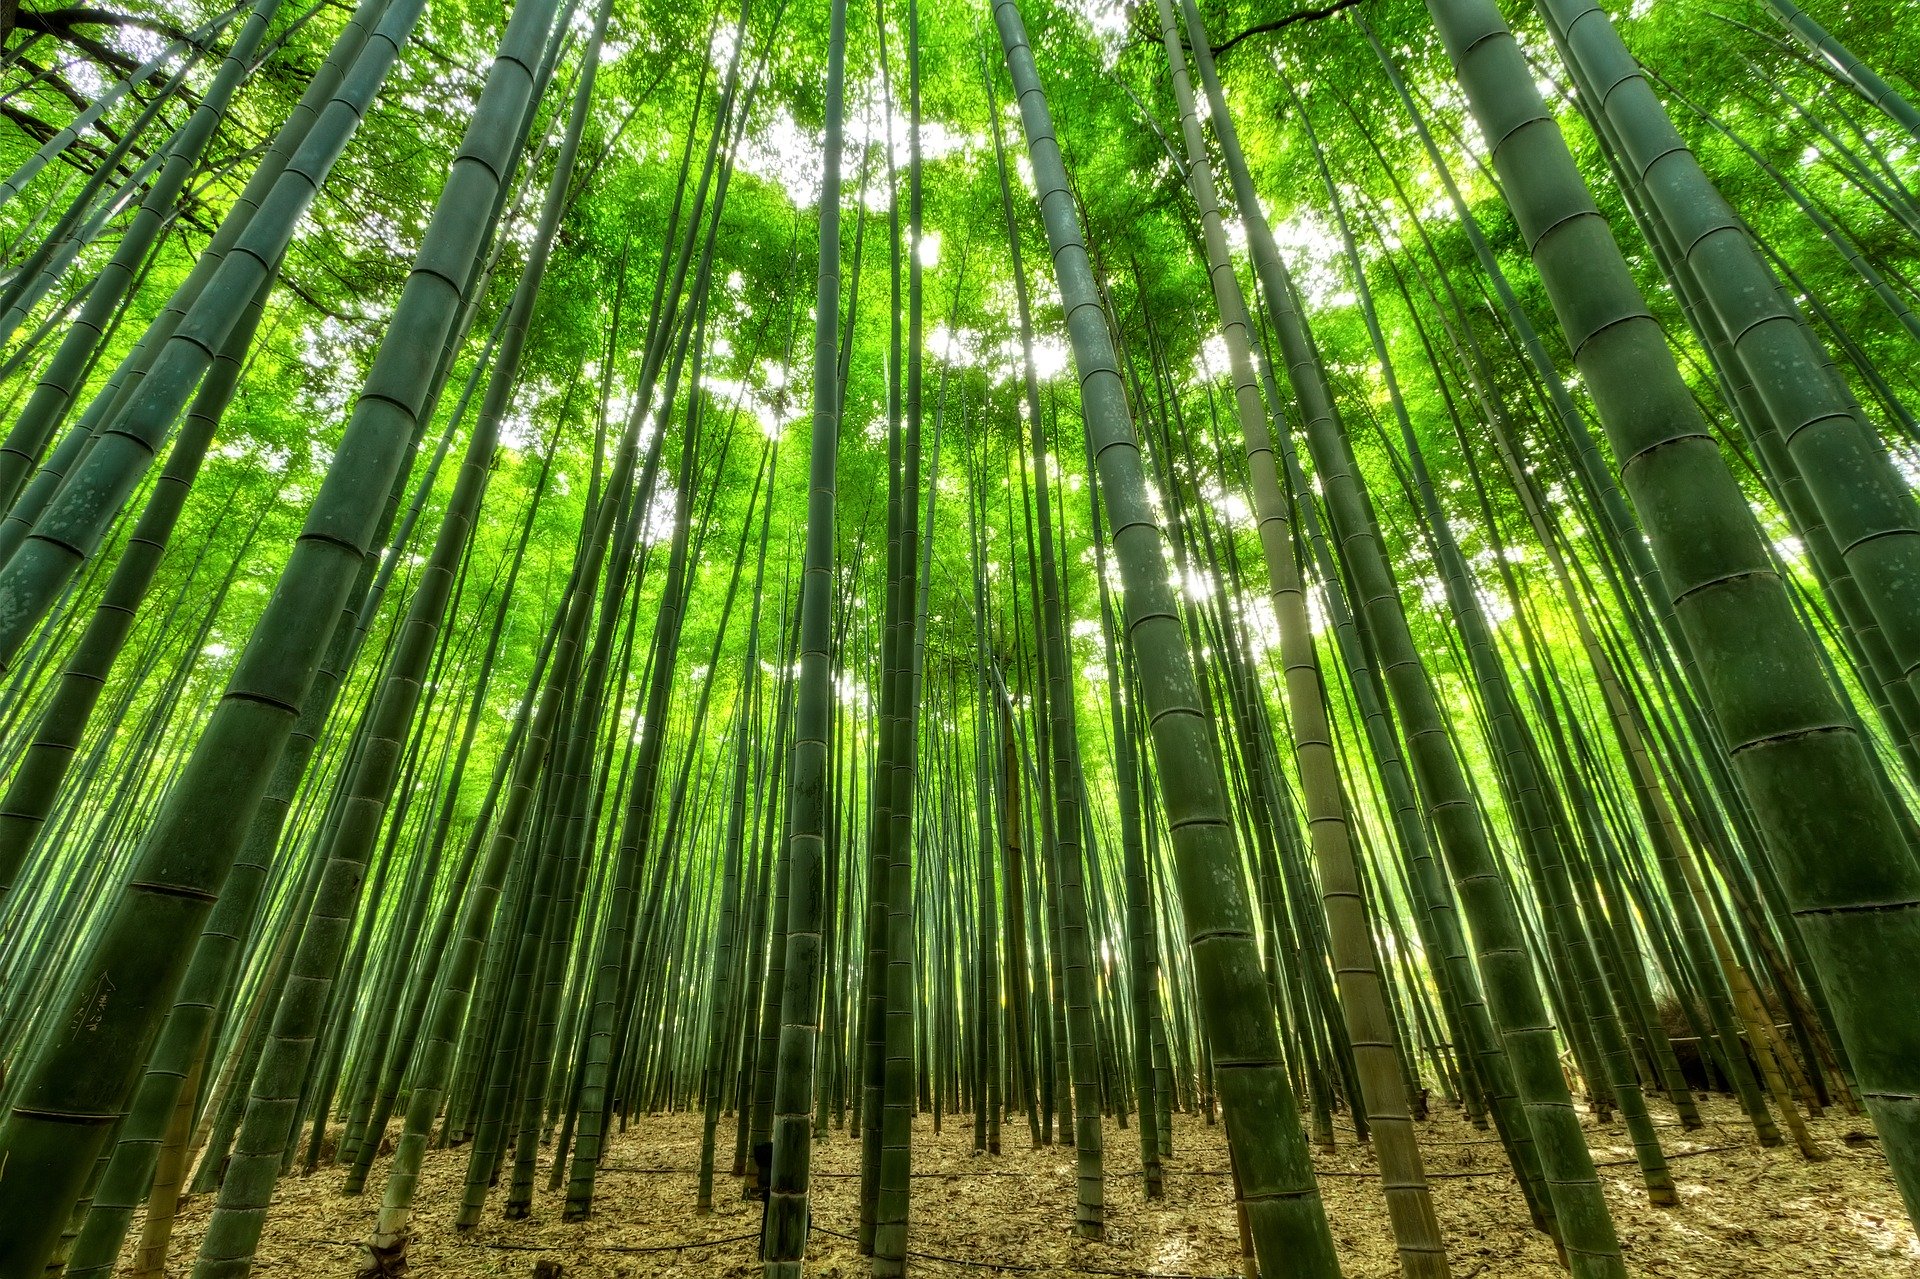 Bild zeigt einen Bambuswald und steht symbolisch für Bambus im Haus und Garten.